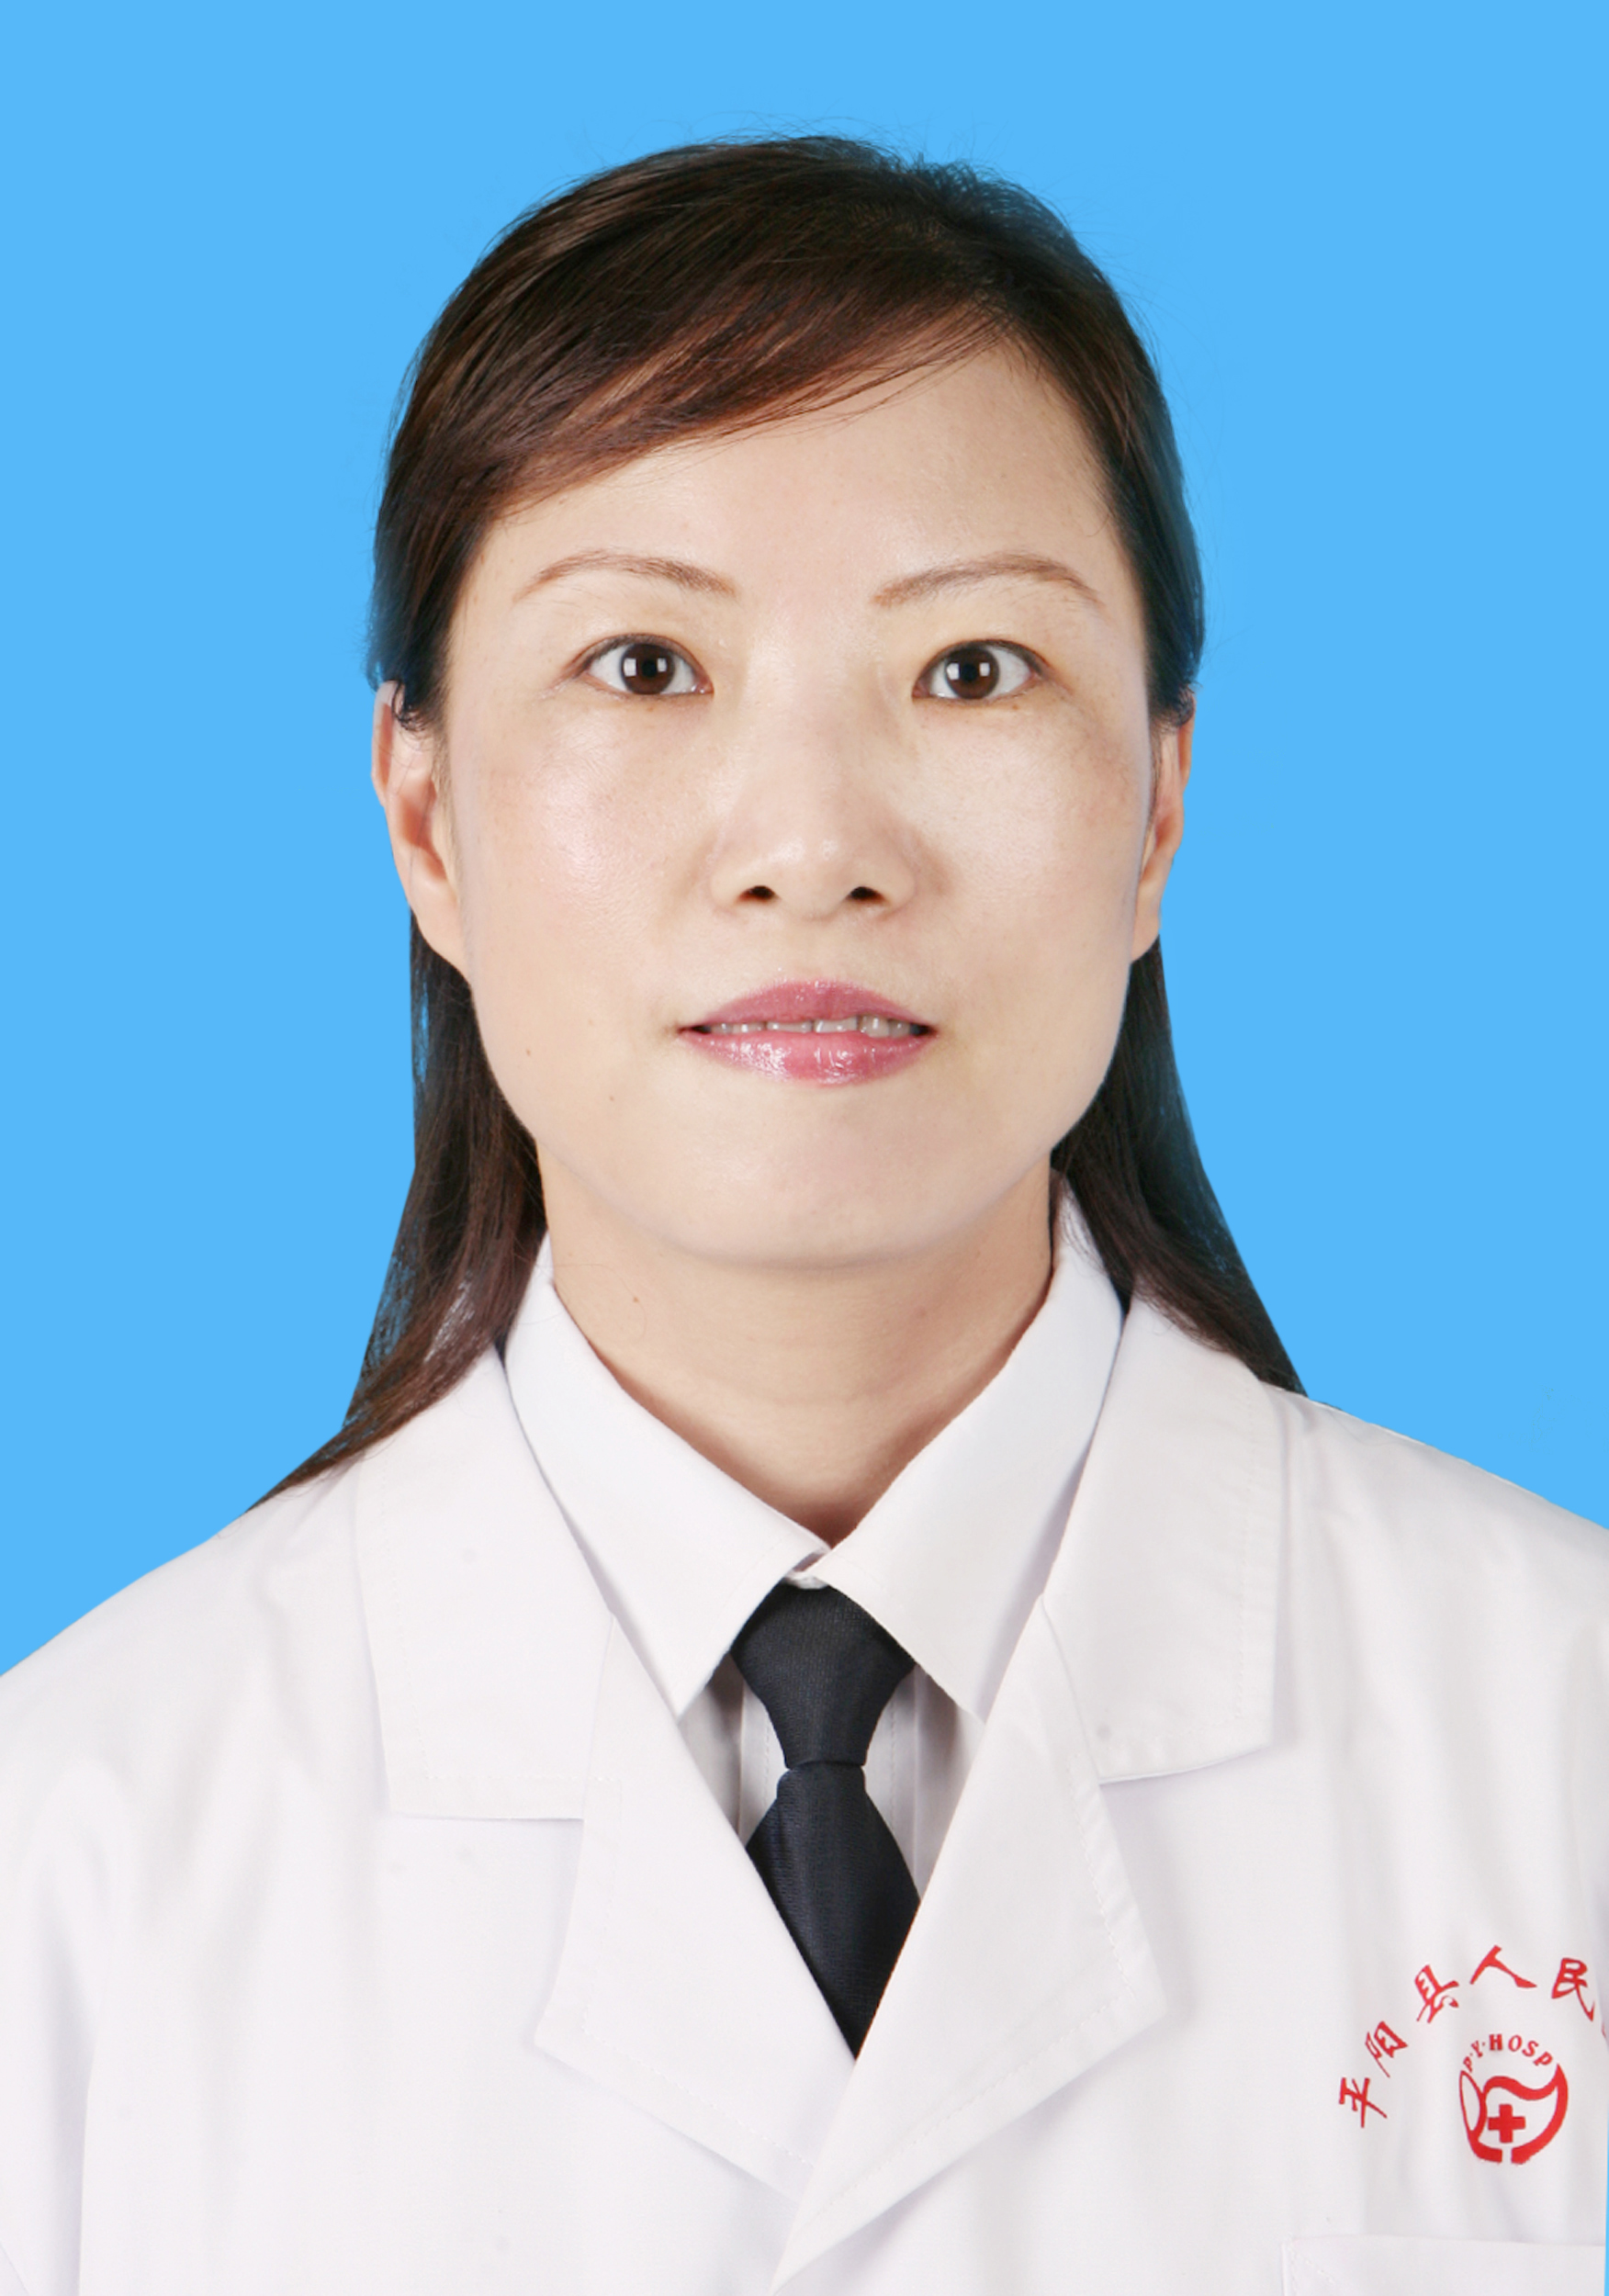 中国女医生素材-中国女医生图片-中国女医生素材图片下载-觅知网